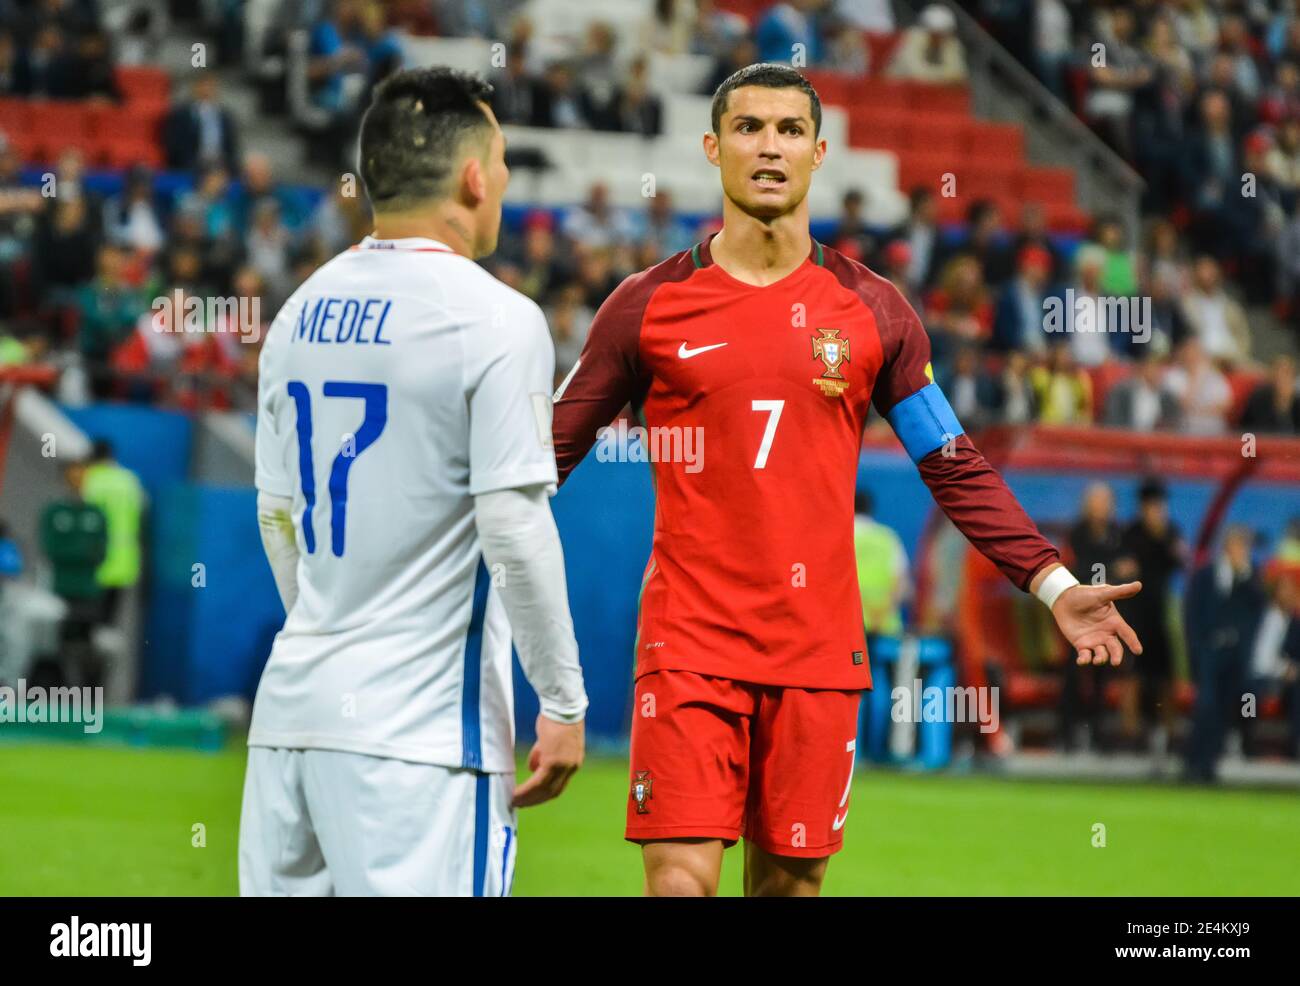 FIFA on X: Cristiano Ronaldo will appear in the semi-finals of a